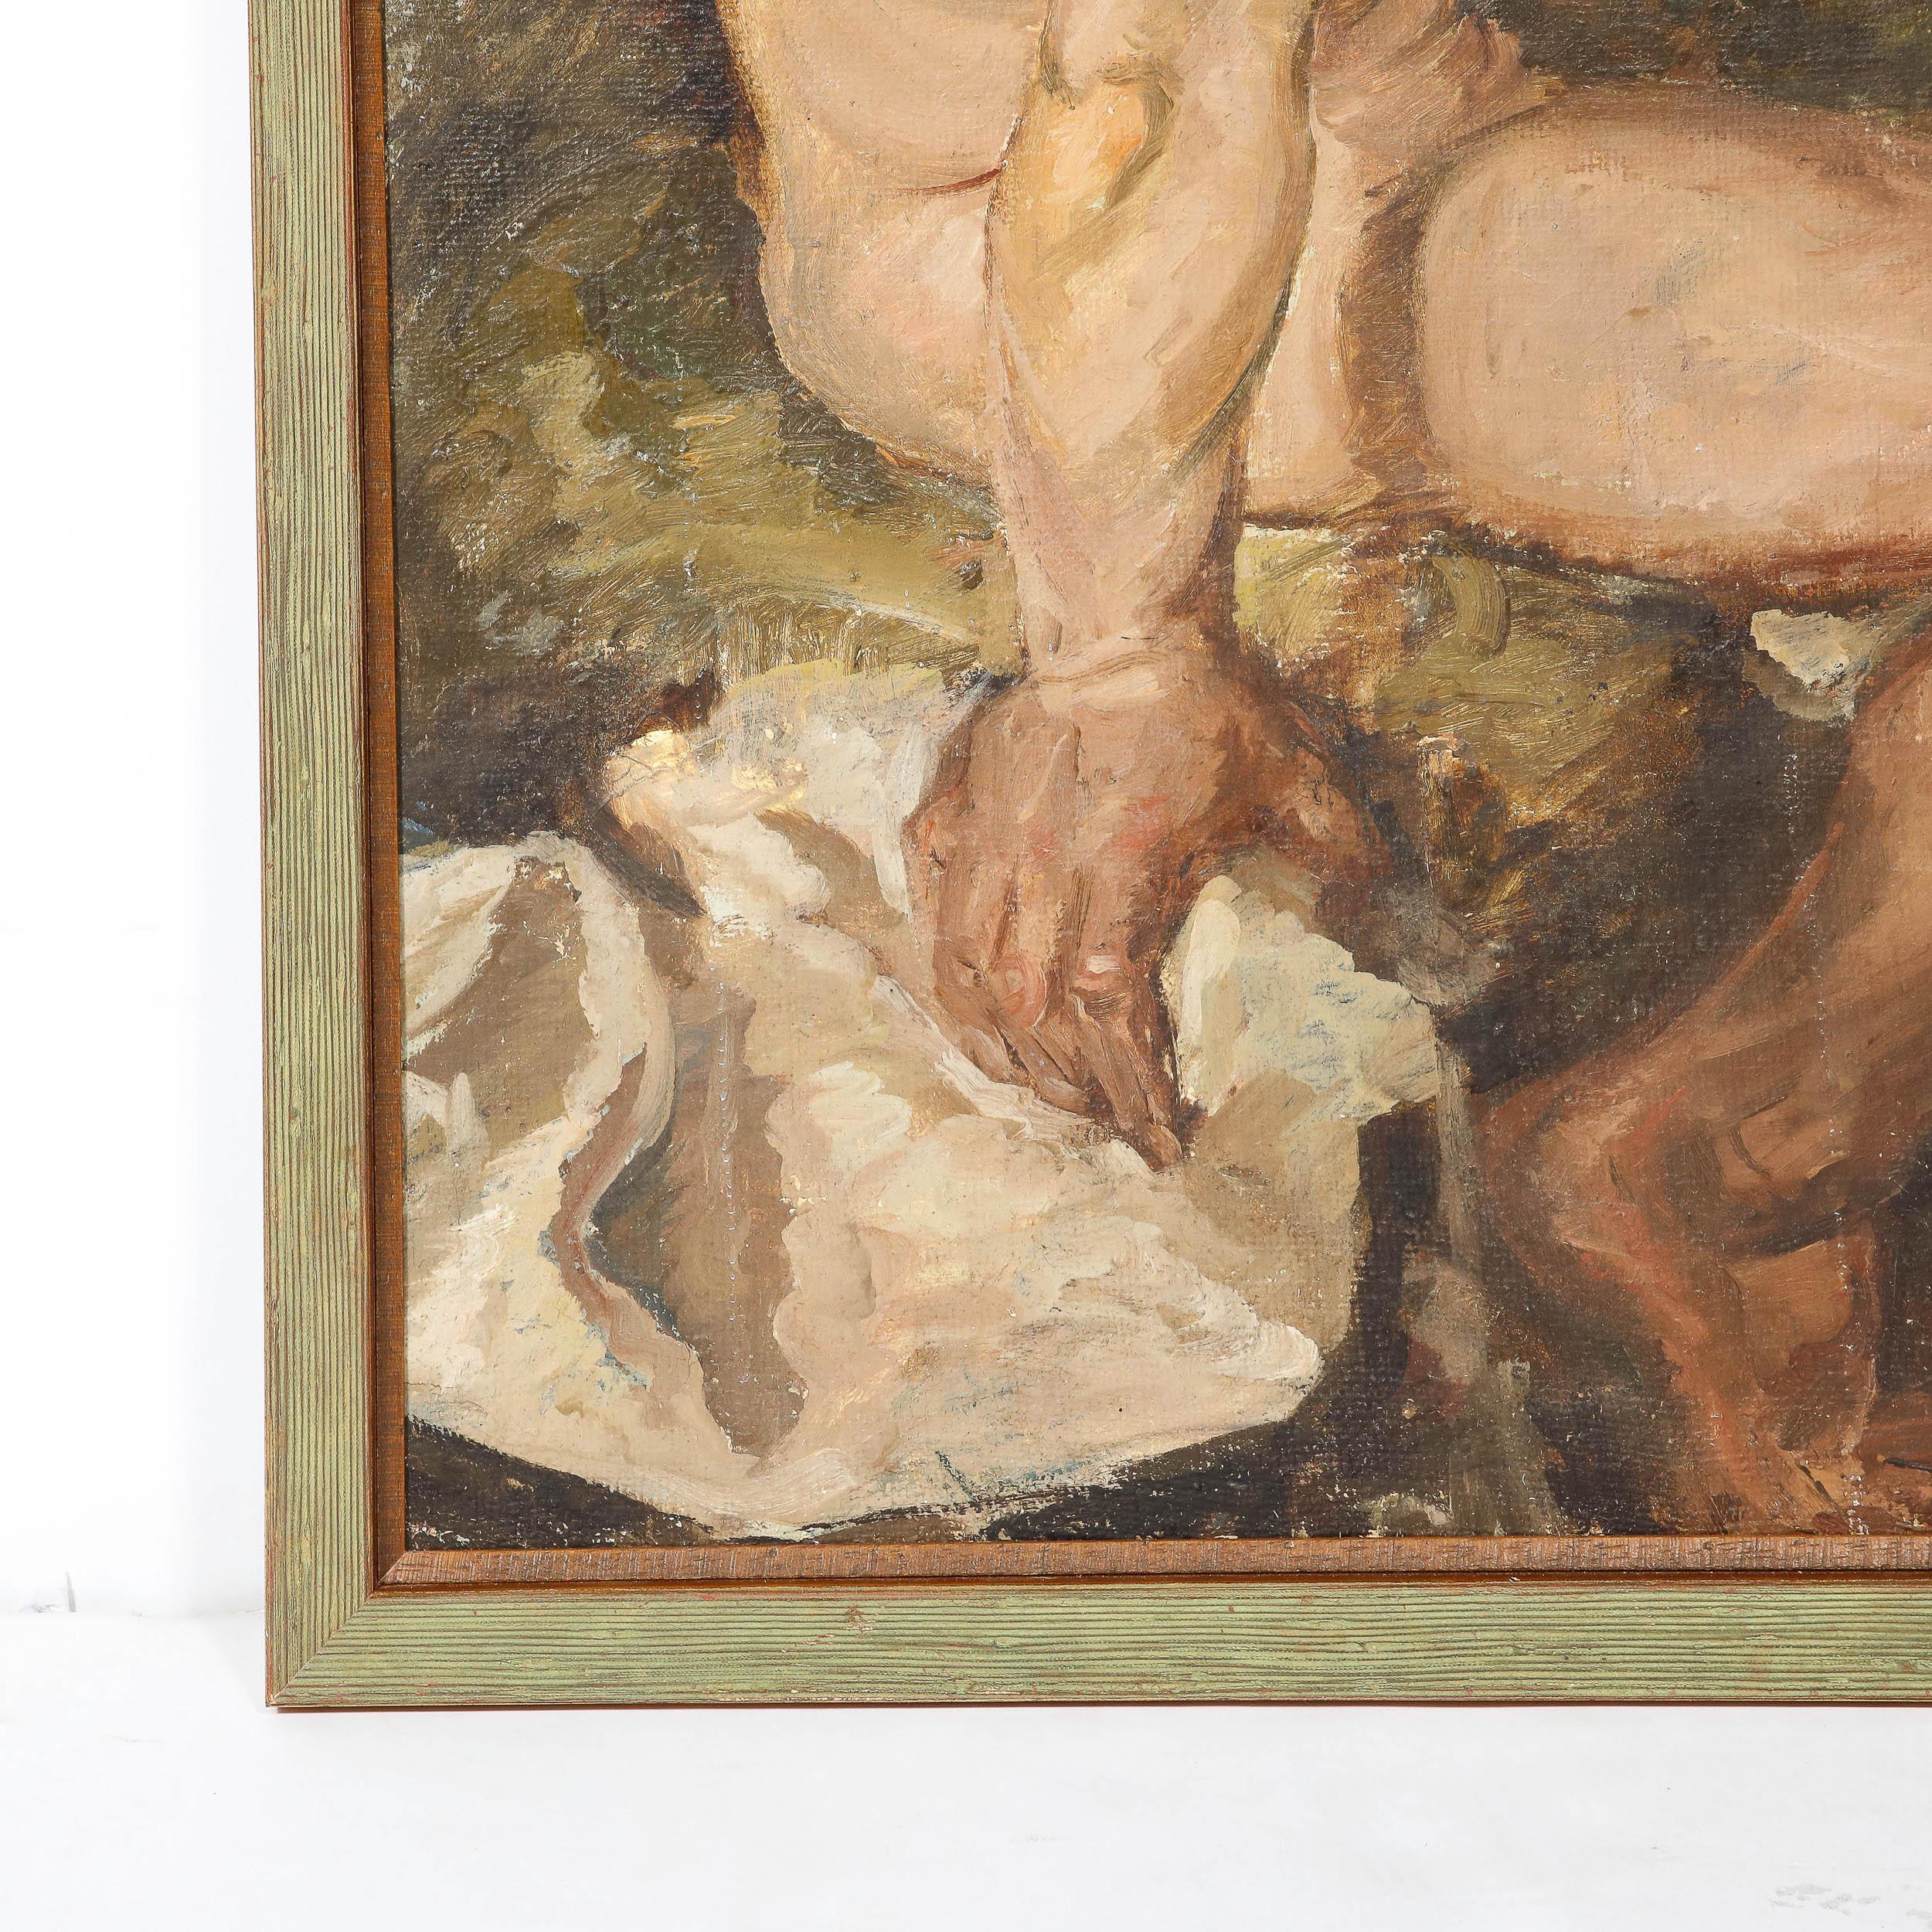 Dieses elegante romantische Ölgemälde auf Sackleinen wurde von einem unbekannten Meister in der ersten Hälfte des 20. Das in knappen, aber expressionistischen Pinselstrichen ausgeführte Gemälde zeigt eine nackte männliche Figur im Vordergrund, die